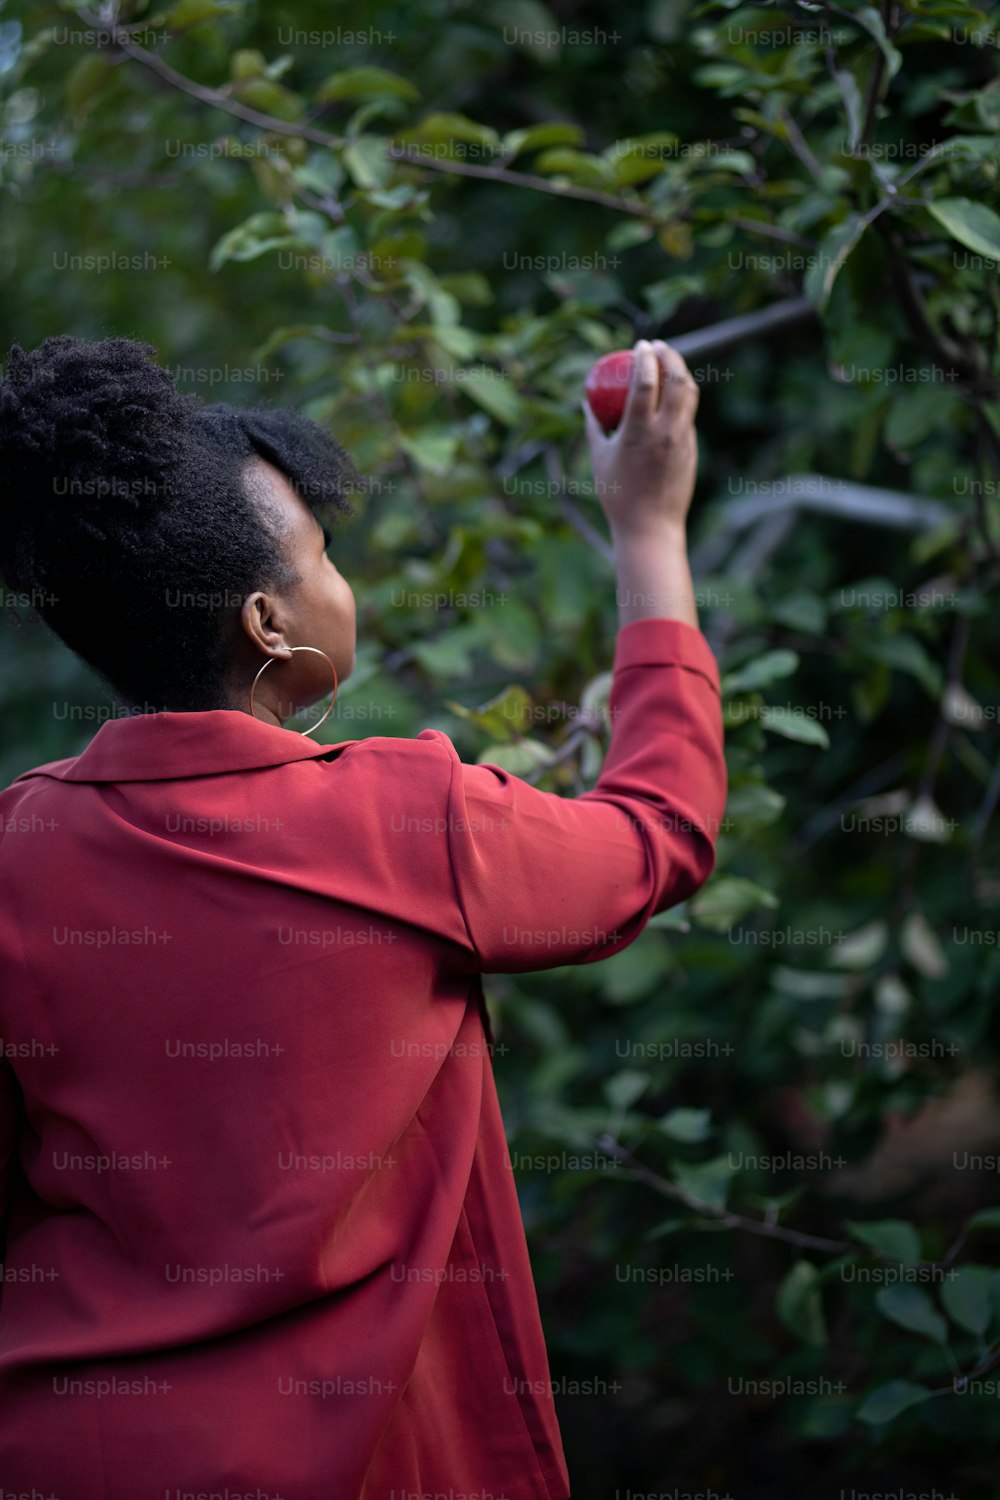 빨간 재킷을 입은 여자가 나무에서 사과를 따고 있다